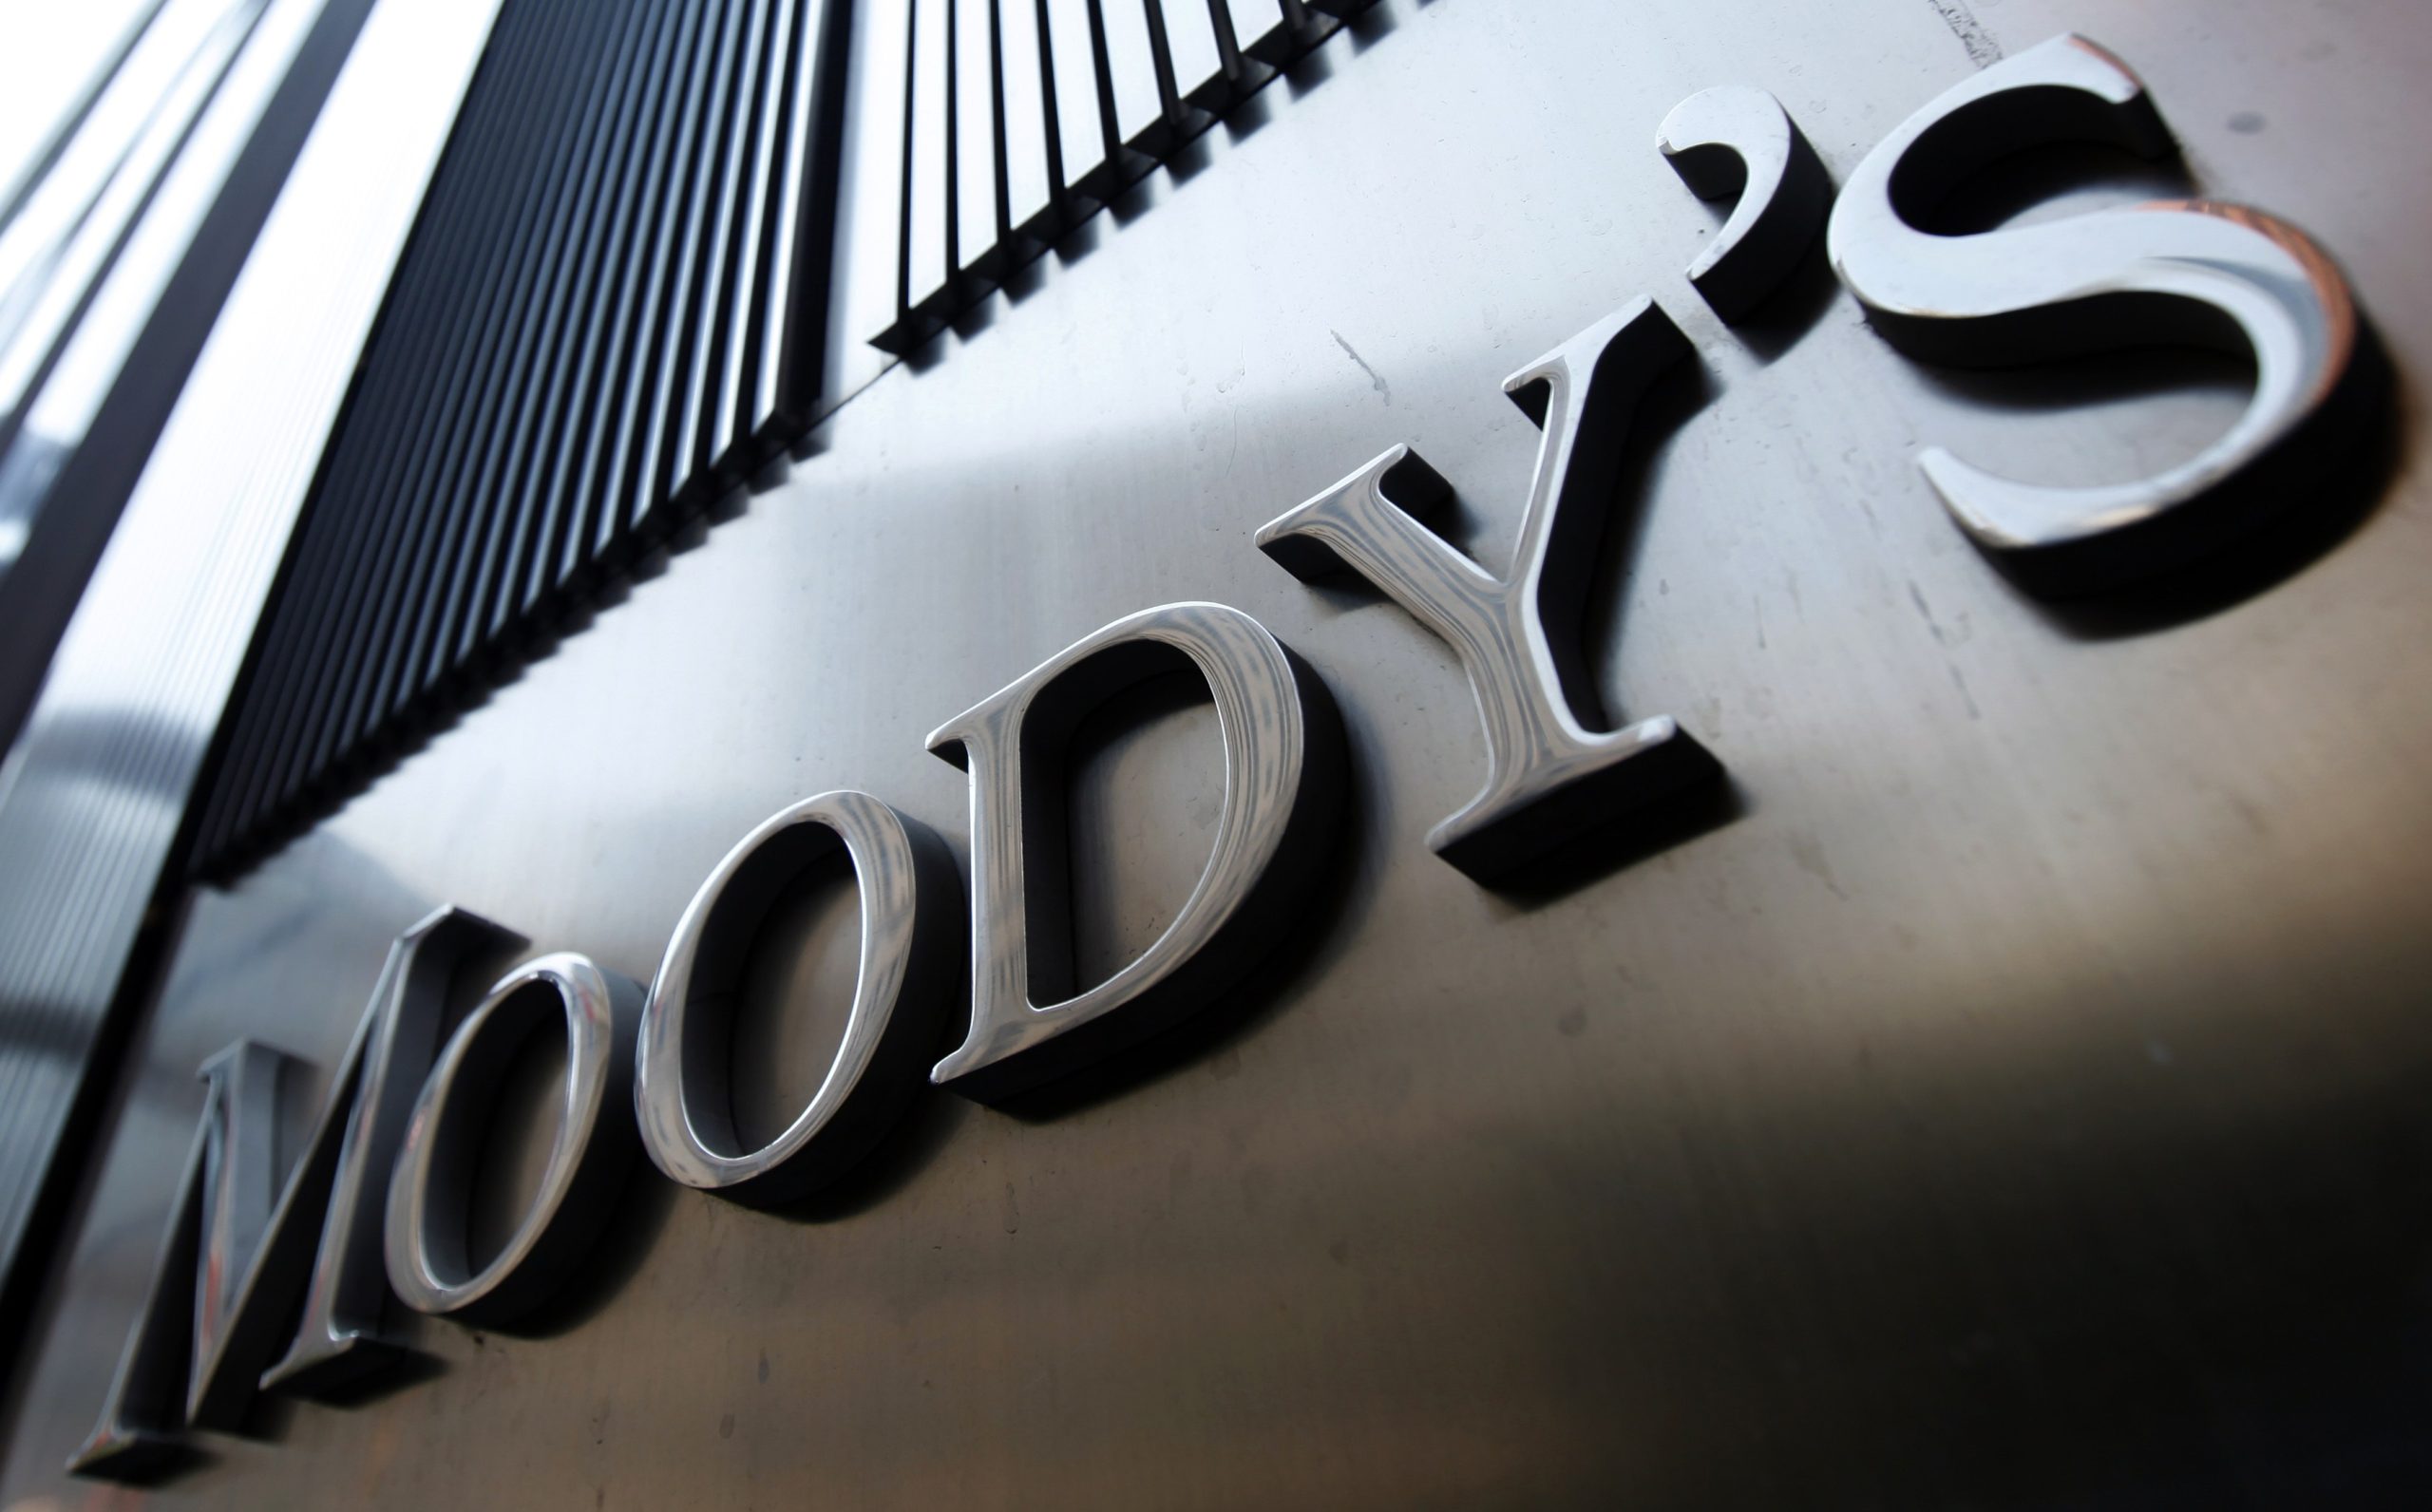 Νέο ύπουλο κτύπημα από Moody’s σε Ιταλία: Υποβάθμισε οκτώ τράπεζες